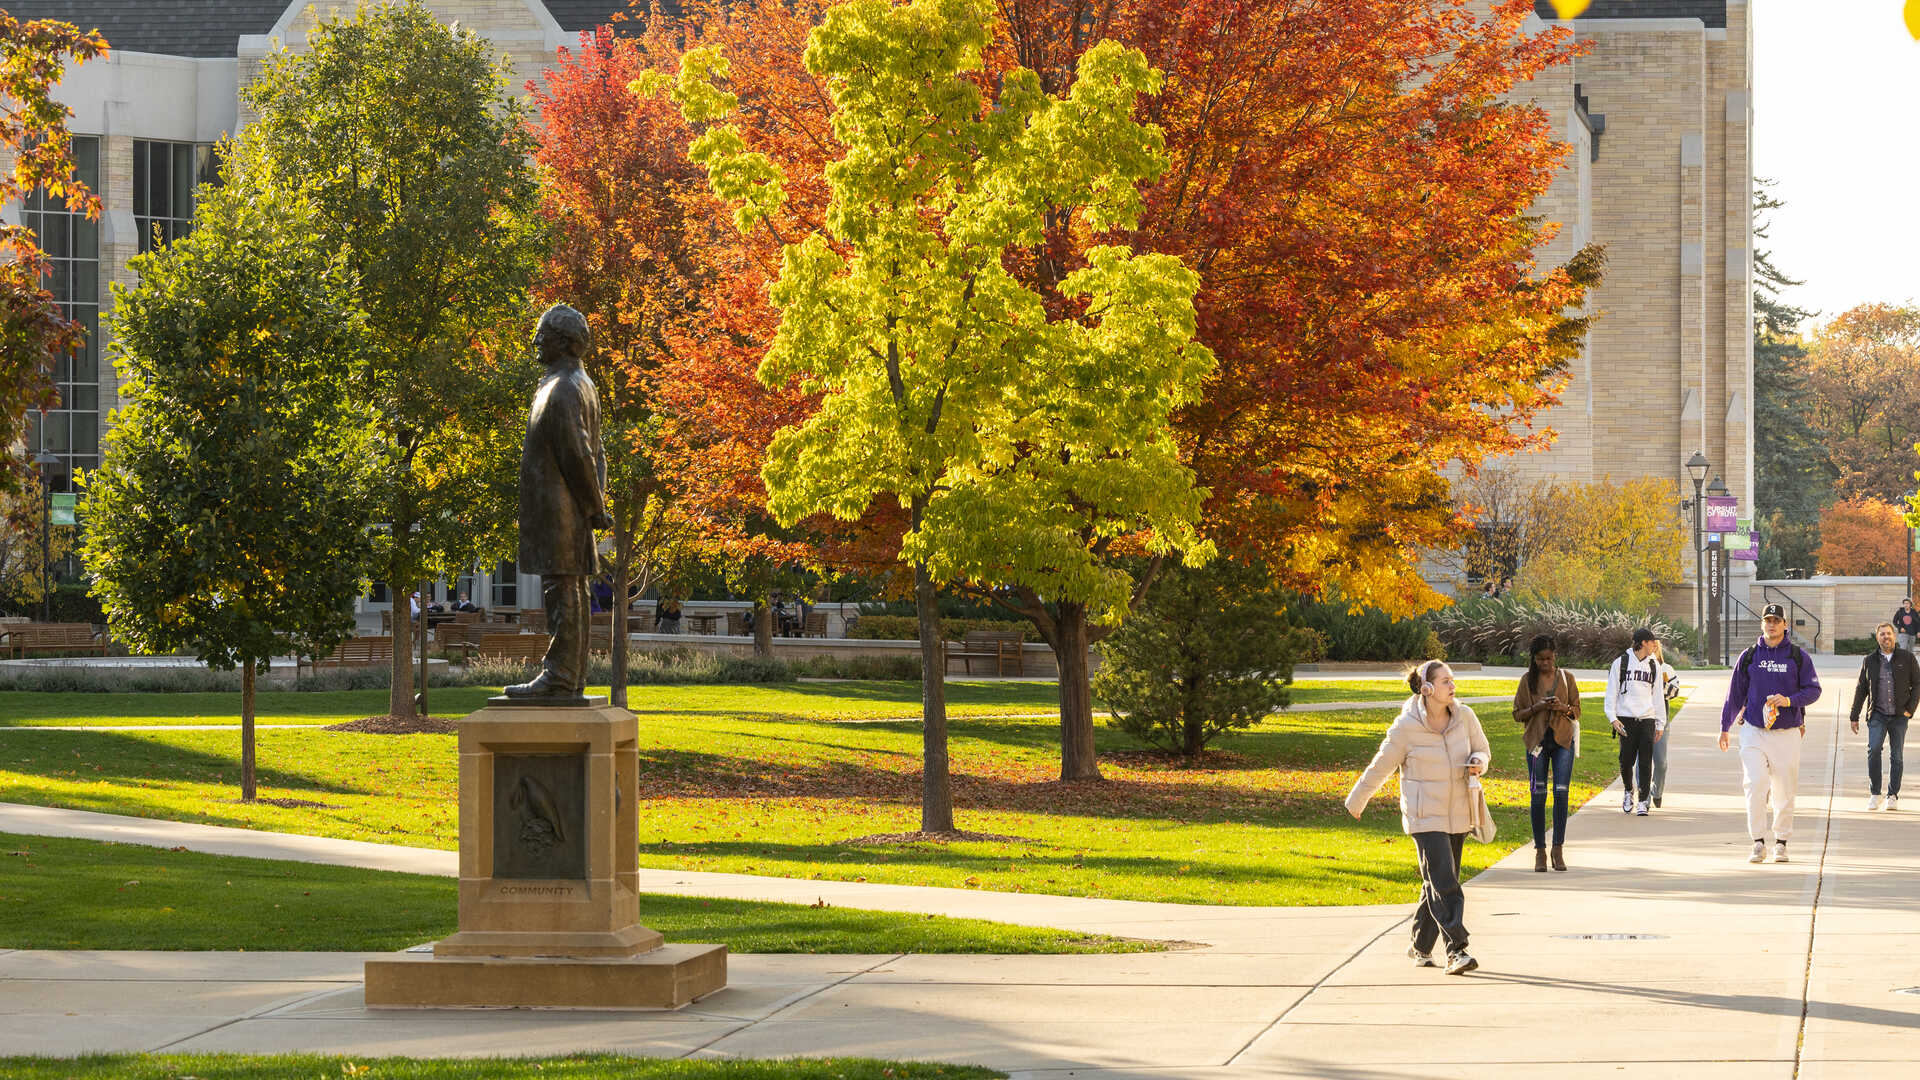 Students walk near autumn trees on campus